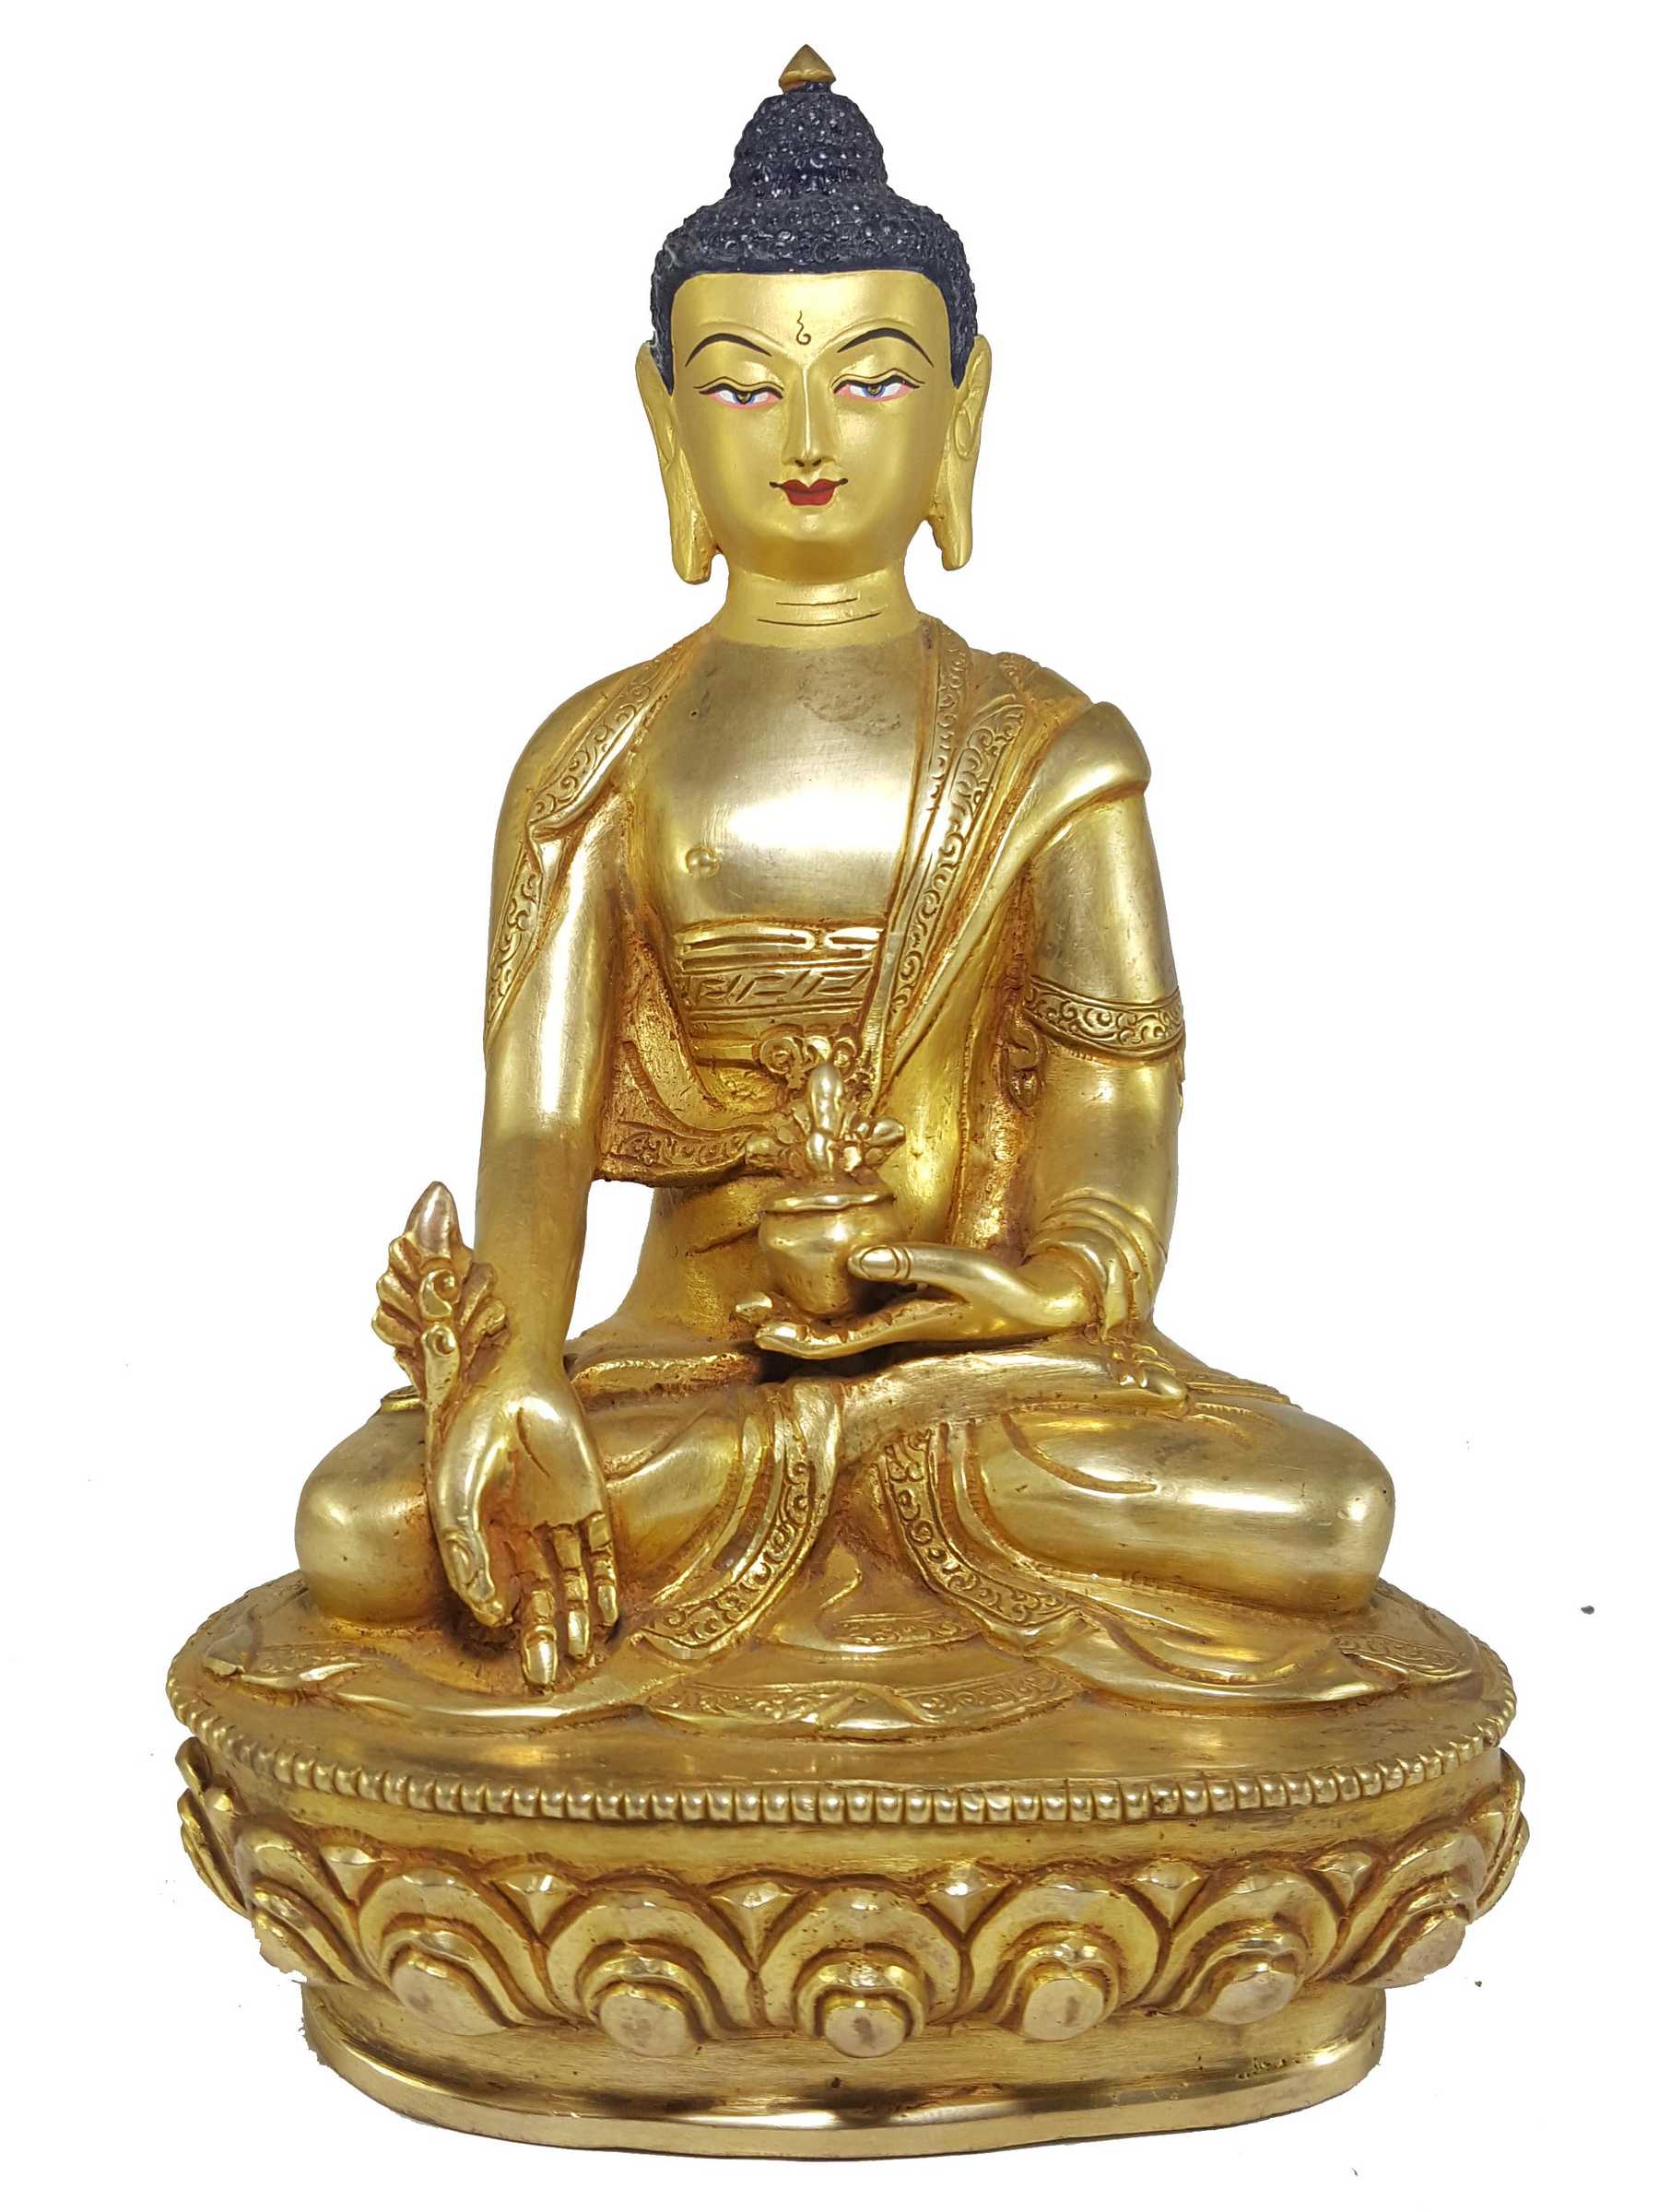 Statue Set Of Shakyamuni Buddha, Amitabha Buddha And Medicine Buddha full Fire Gold Plated, With painted Face